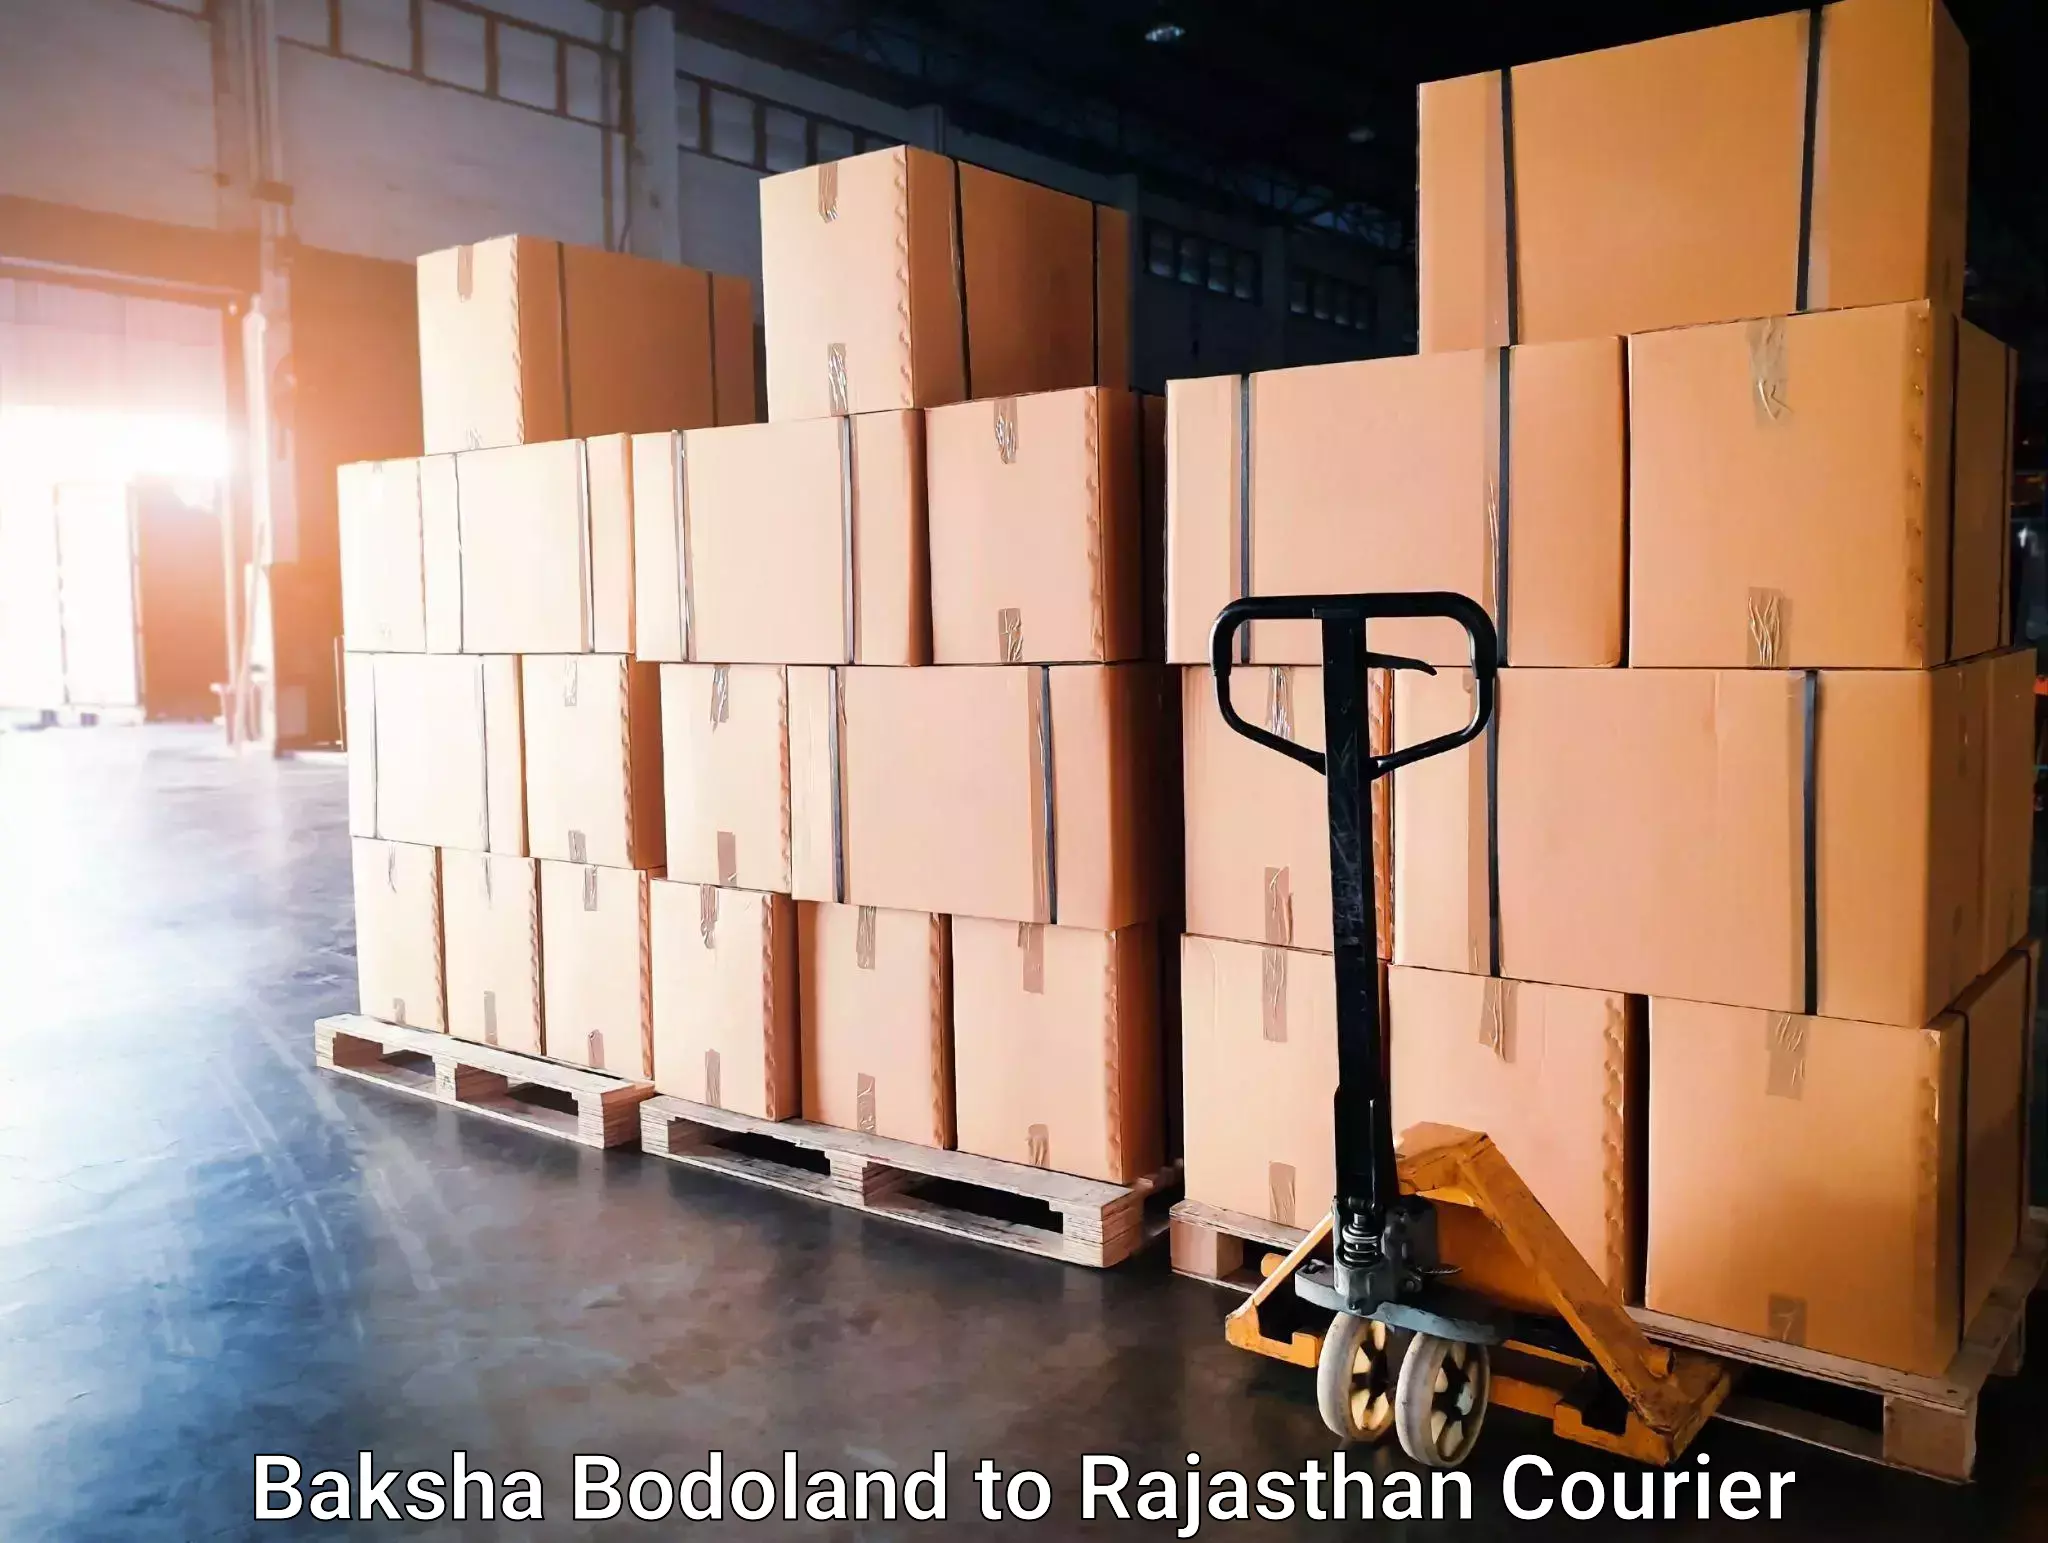 Courier app Baksha Bodoland to Rajasthan